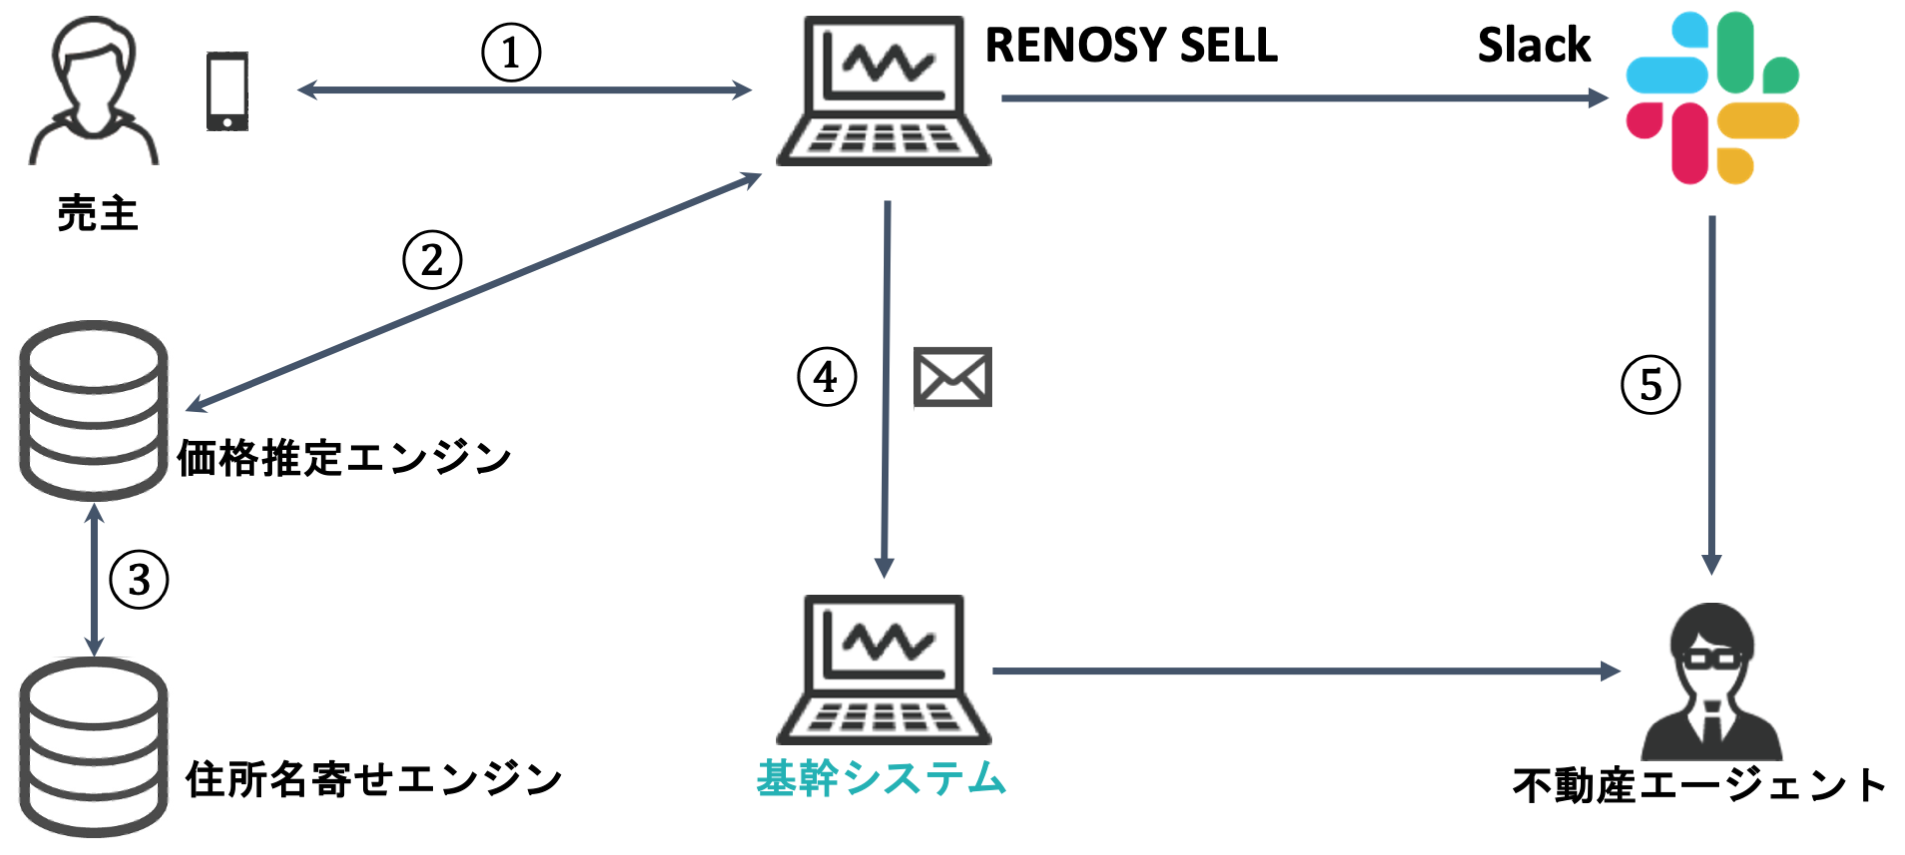 RENOSY SELLシステムの構成